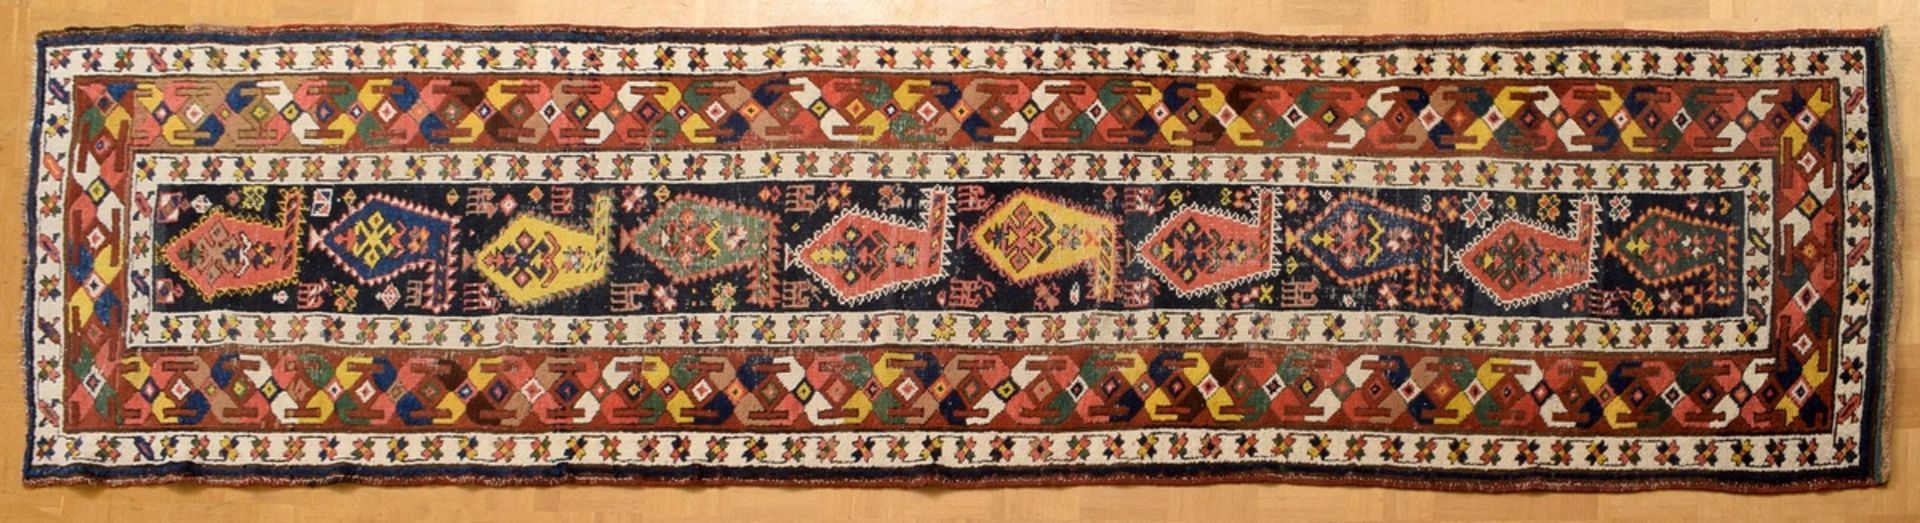 Shahsavan Galerie in starkfarbiger Musterung mit | Shahsavan gallery in a strongly coloured pattern - Bild 2 aus 9